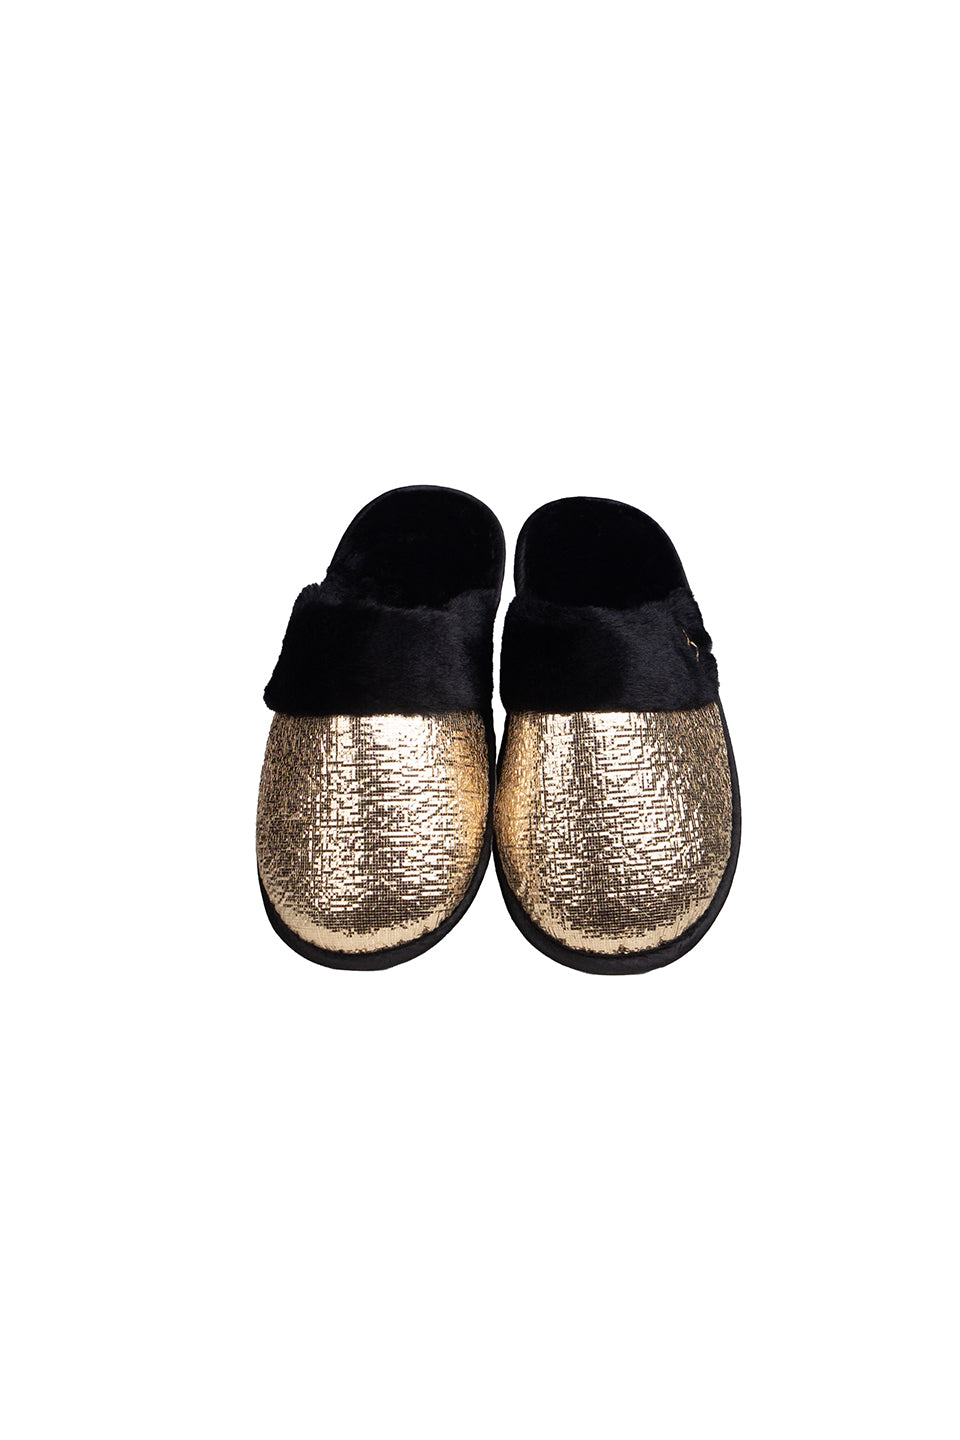 Gold Sparkle Shoes 18